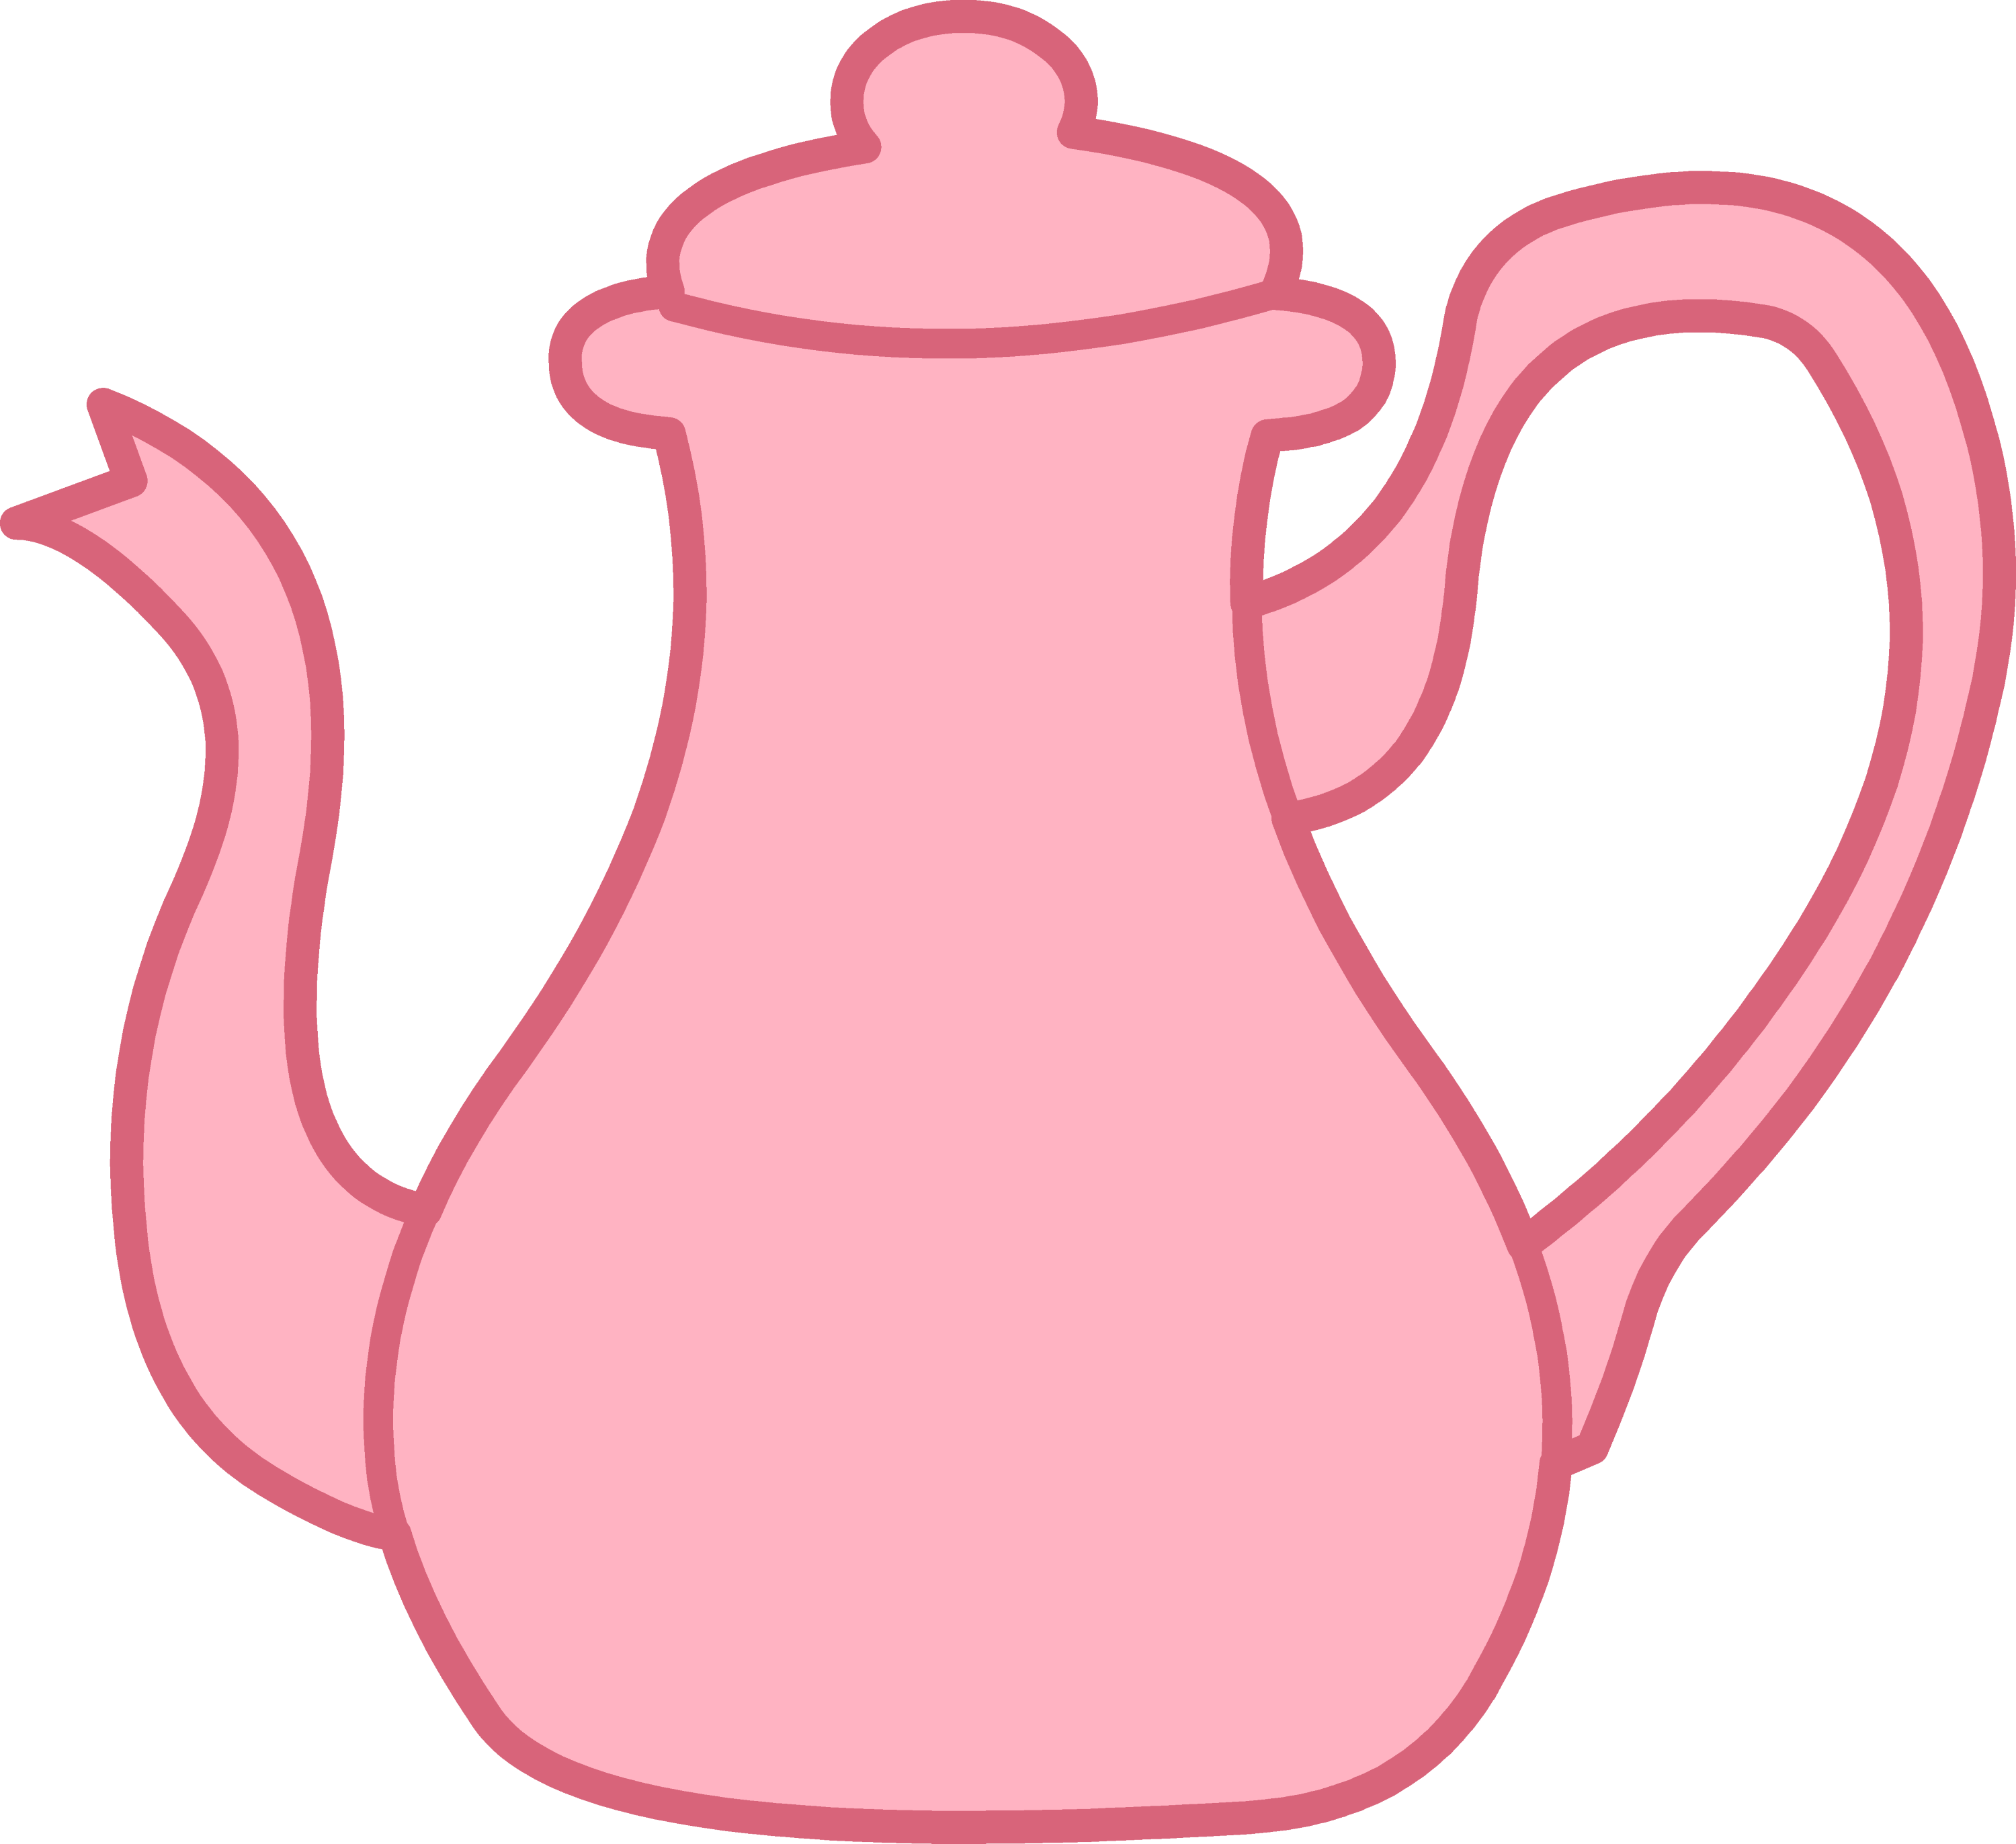 clipart teapot images - photo #37